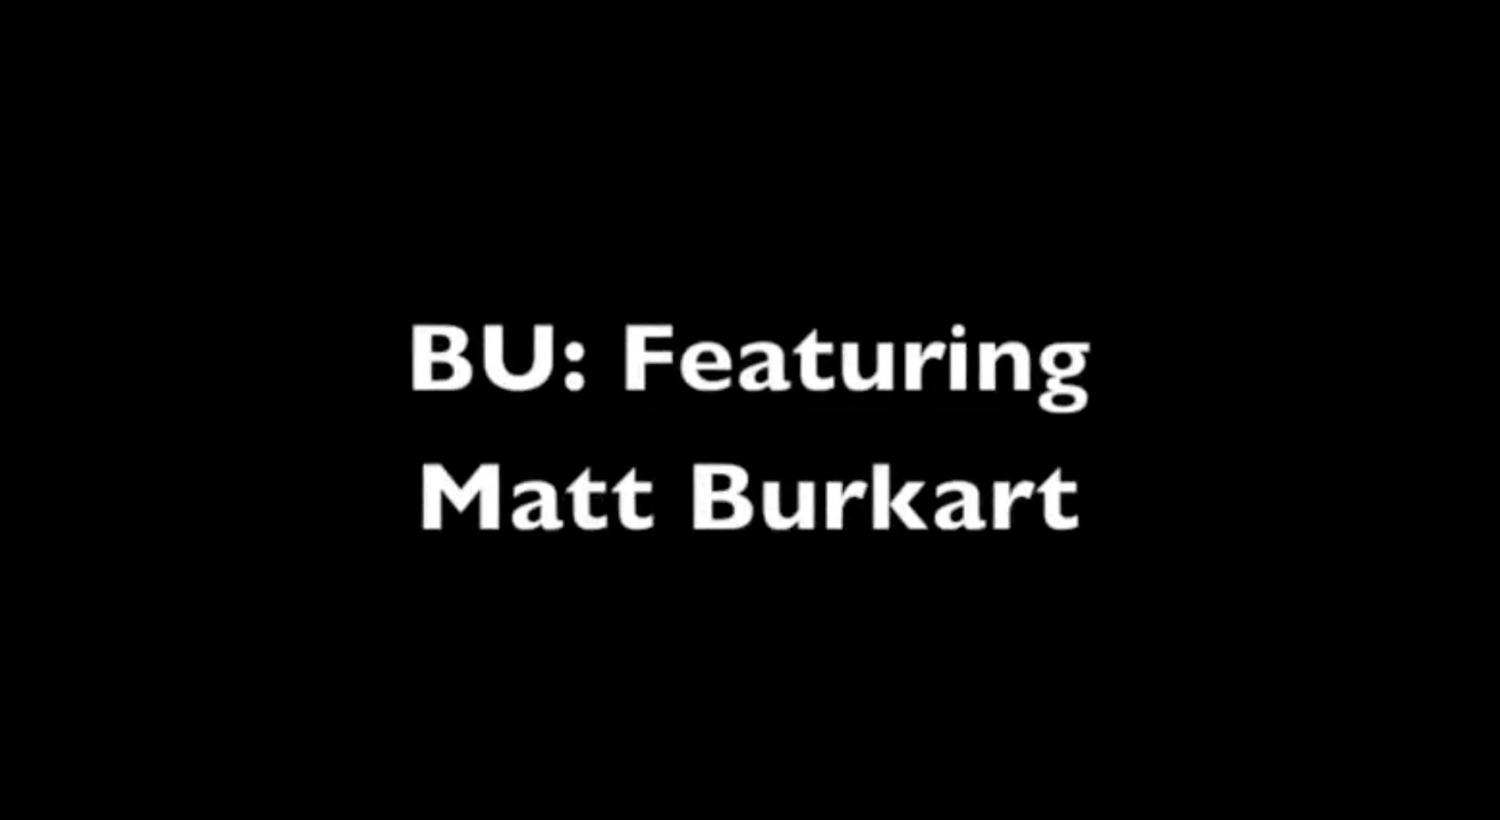 BU: Featuring Matt Burkart